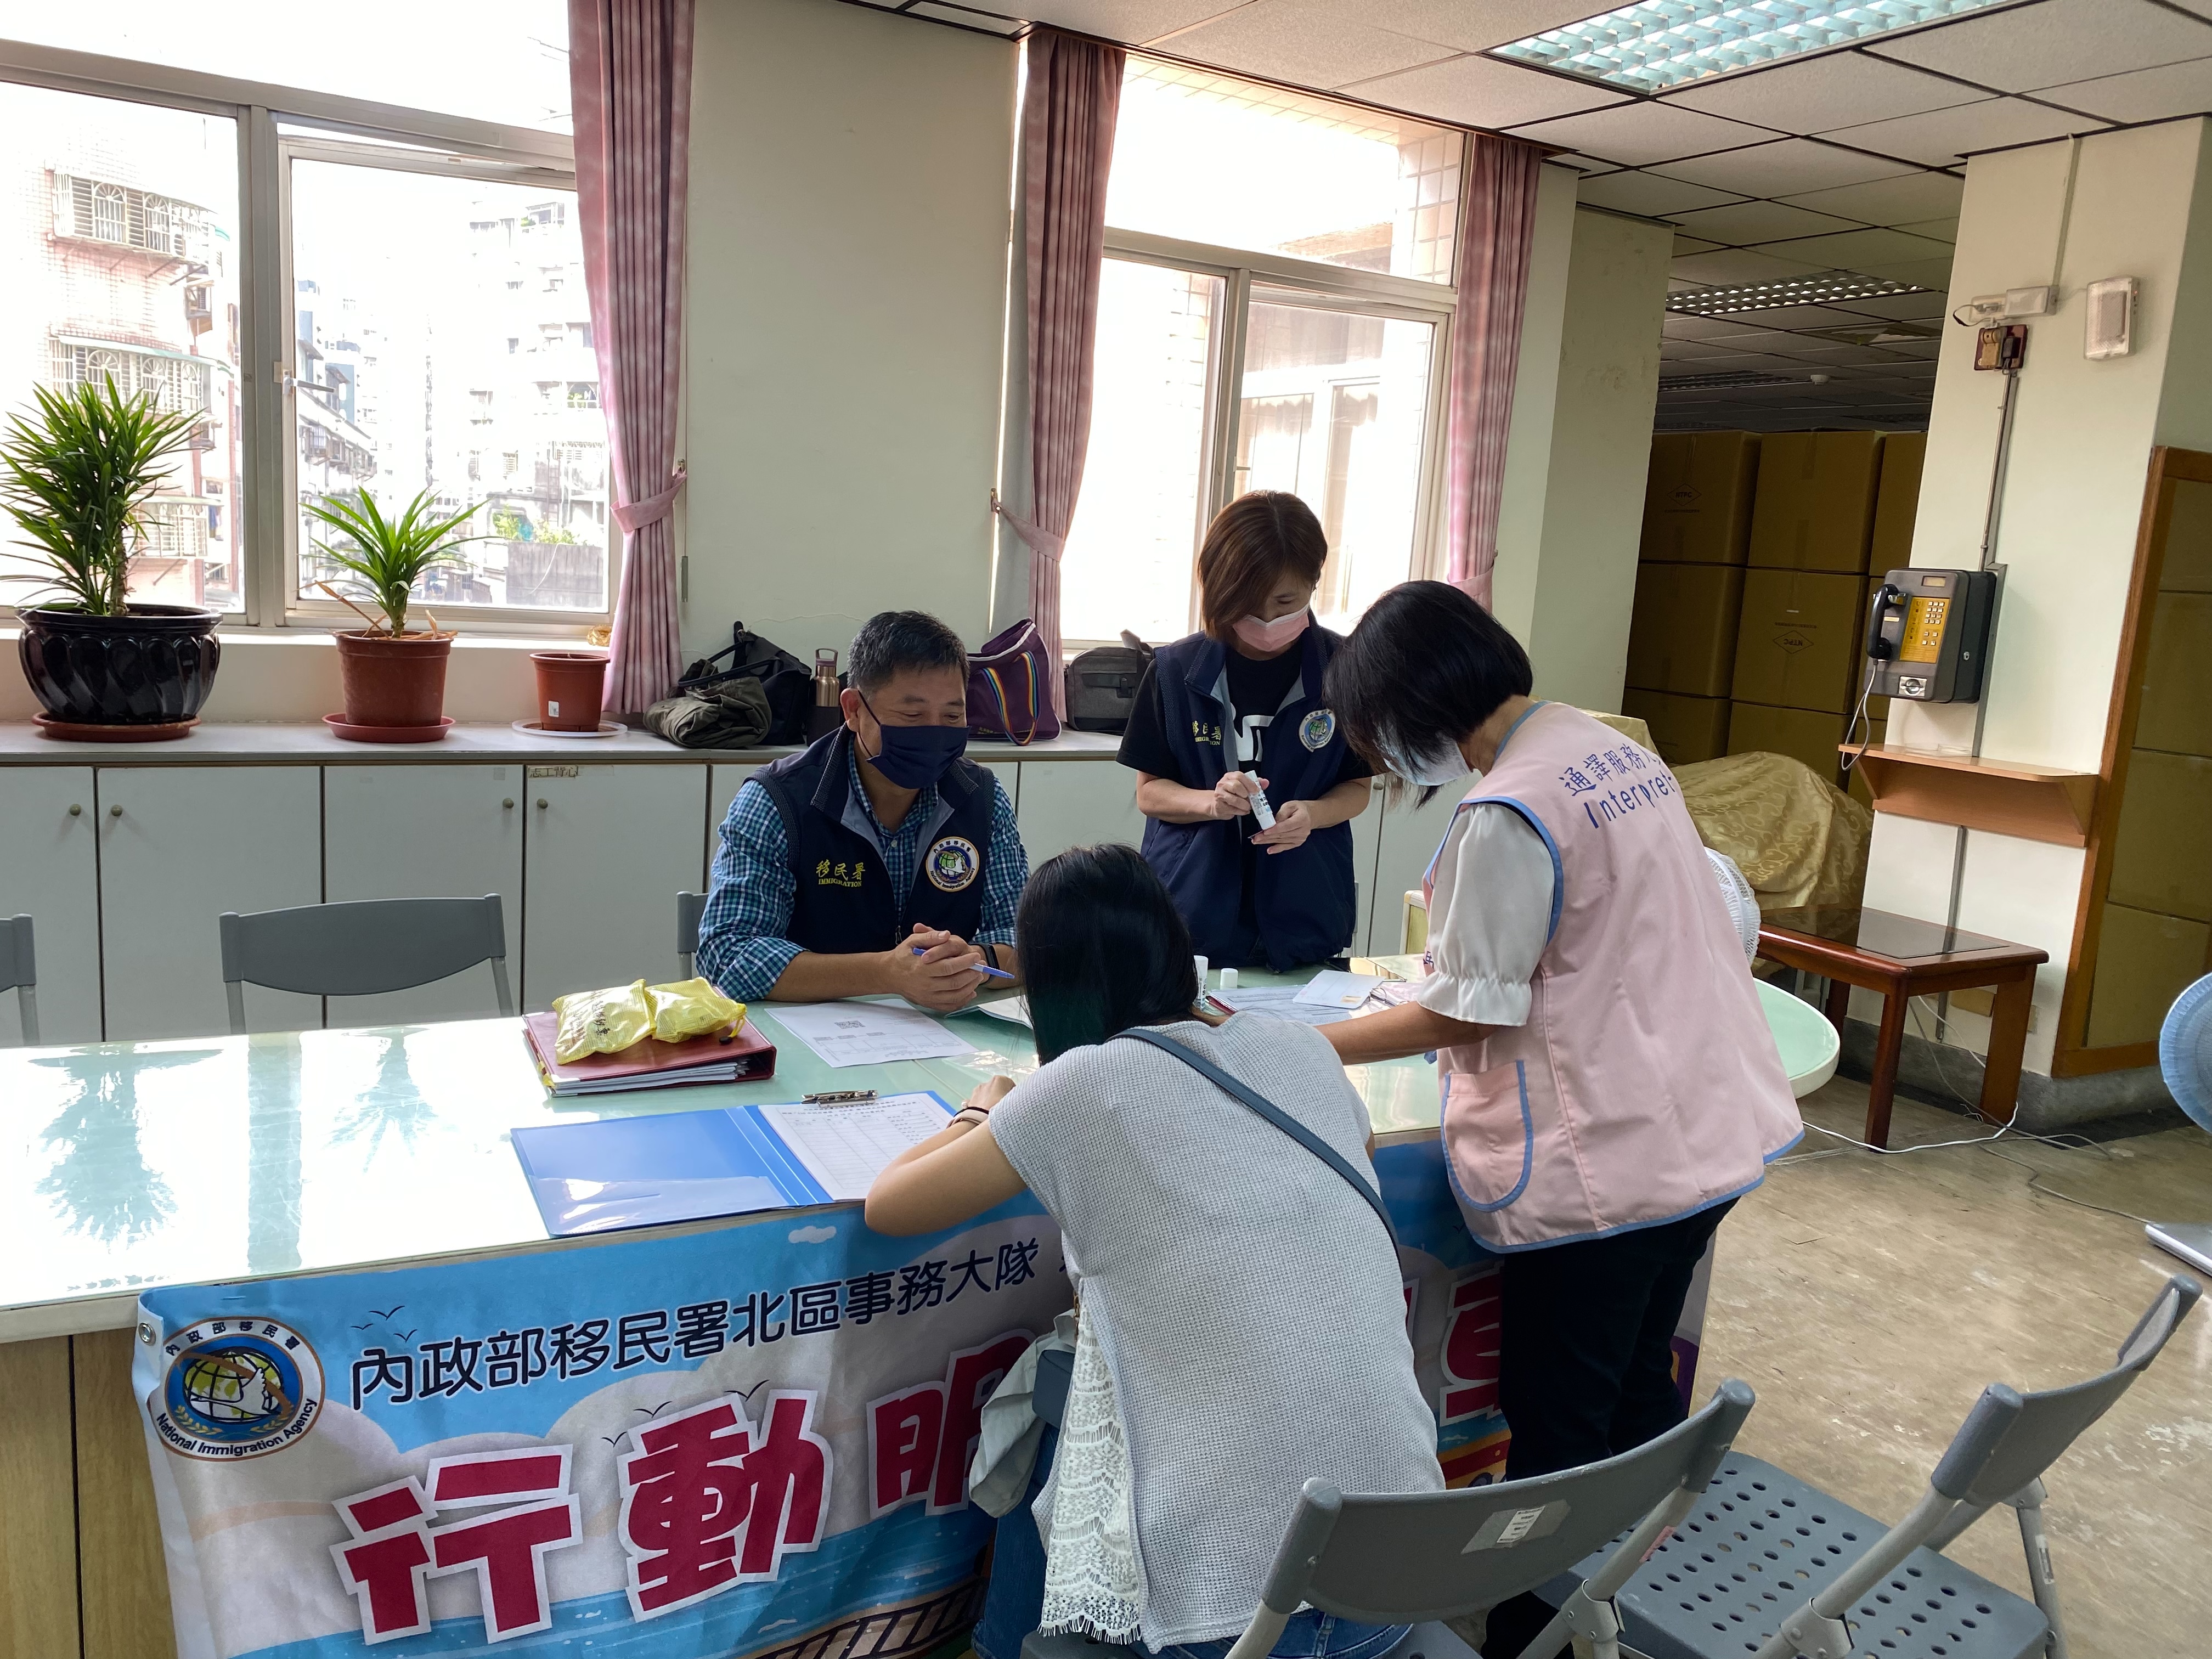 Agensi Imigrasi Nasional Resmi Implementasikan Unit Layanan Keliling, Tanggal 18 Oktober Dijadwalkan Berangkat Menuju Pusat Layanan Keluarga Penduduk Baru Sanchong. Sumber: Agensi Imigrasi Nasional Kota New Taipei